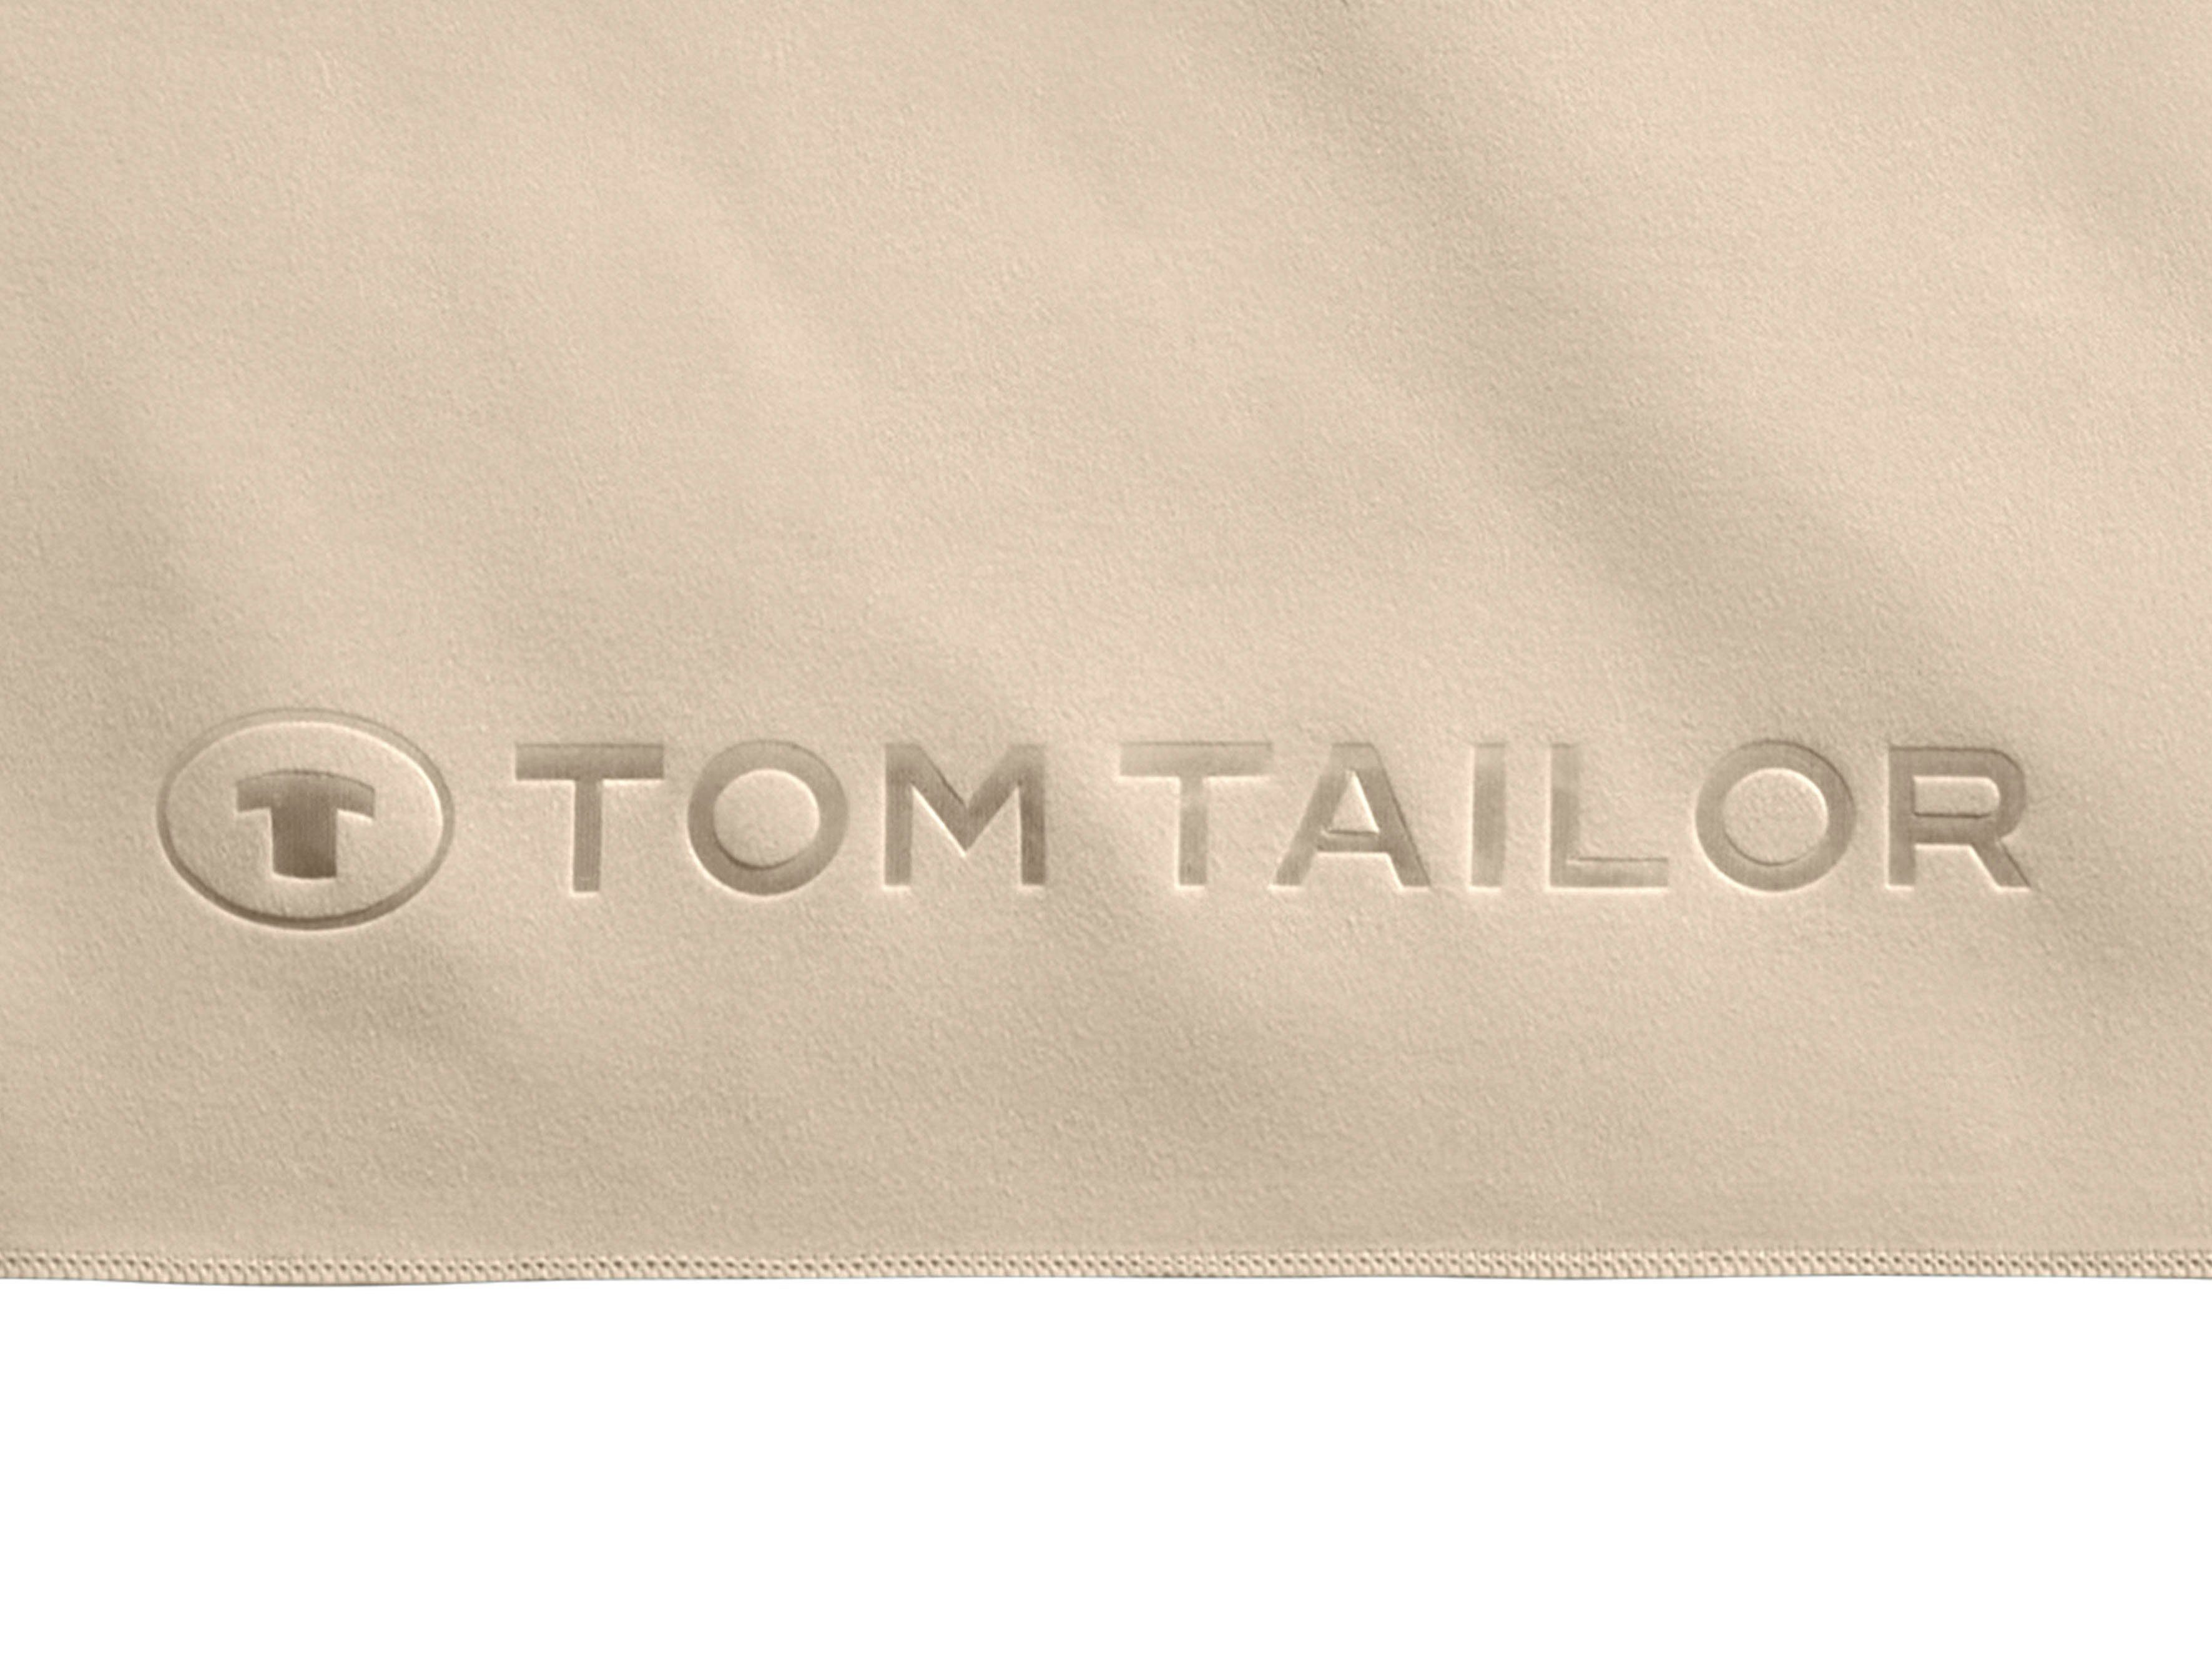 schnell HOME Logo TOM Ware Fitness, Qualität, TAILOR gewebte dünne, mit uni, weiche (1-St), rose feinfädige, trocknend, Duschtuch